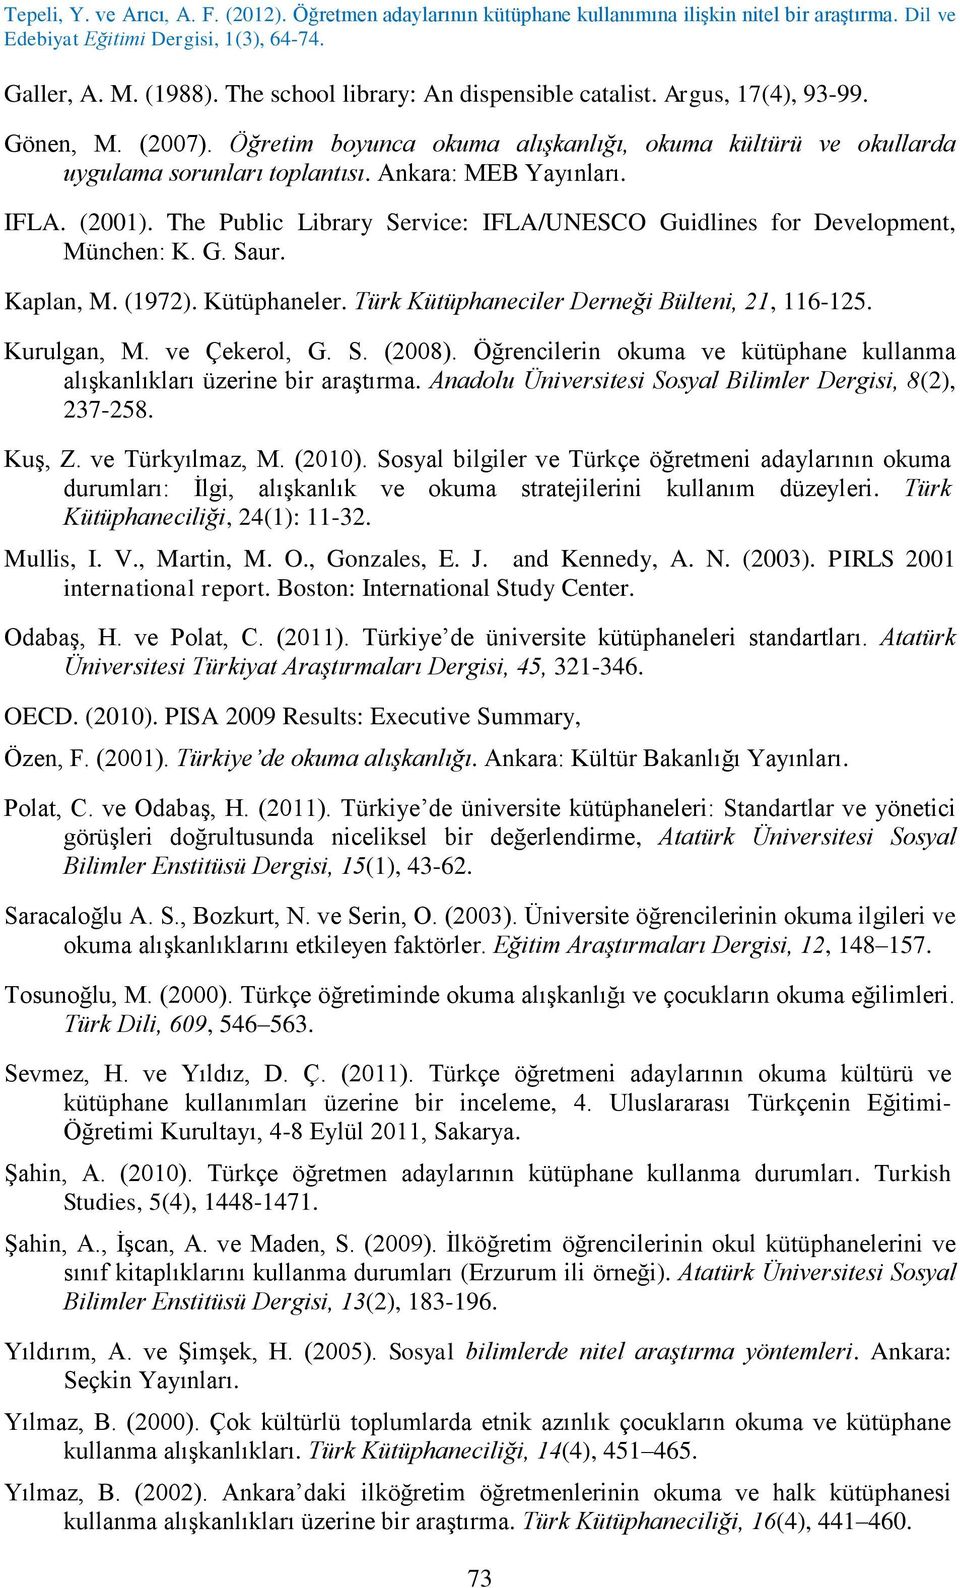 Türk Kütüphaneciler Derneği Bülteni, 21, 116-125. Kurulgan, M. ve Çekerol, G. S. (2008). Öğrencilerin okuma ve kütüphane kullanma alışkanlıkları üzerine bir araştırma.